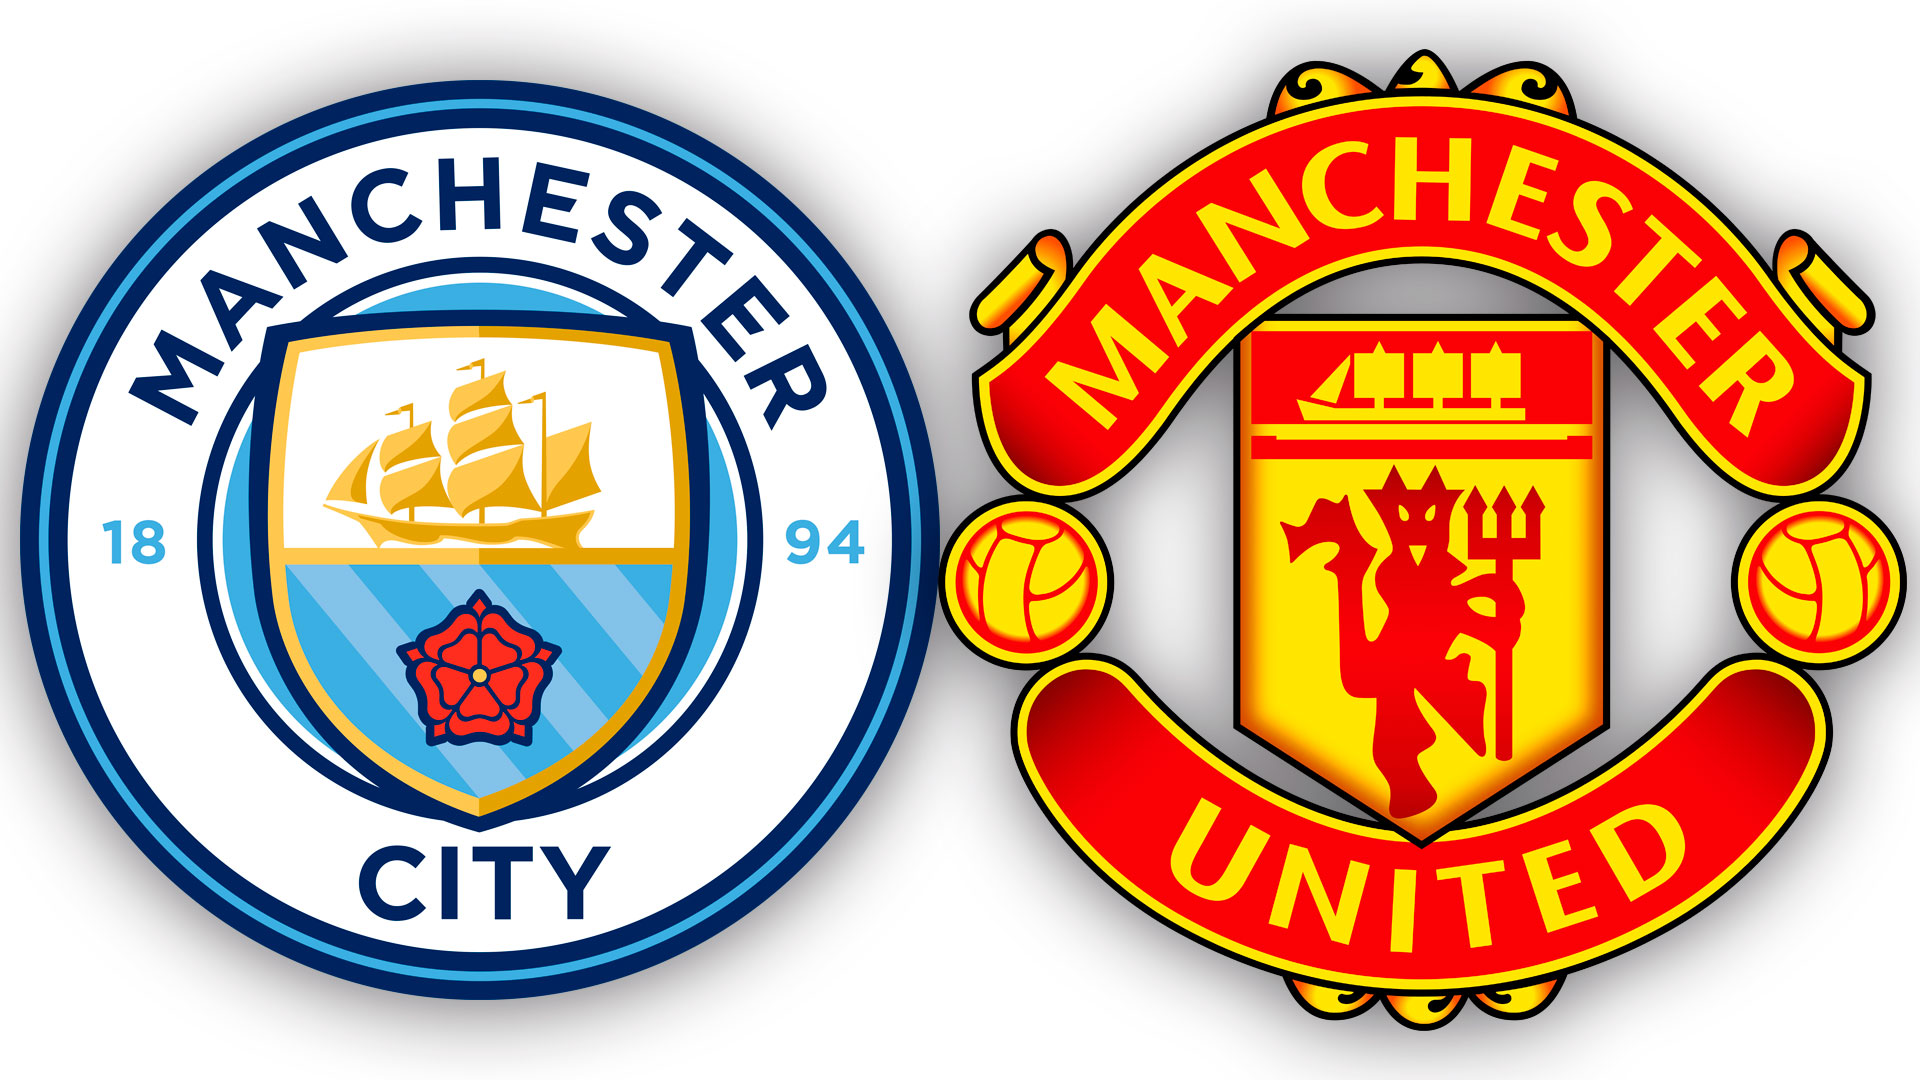 El escabroso significado oculto detrás de los escudos del United y City: la  investigación que abrió un debate en Manchester - Infobae